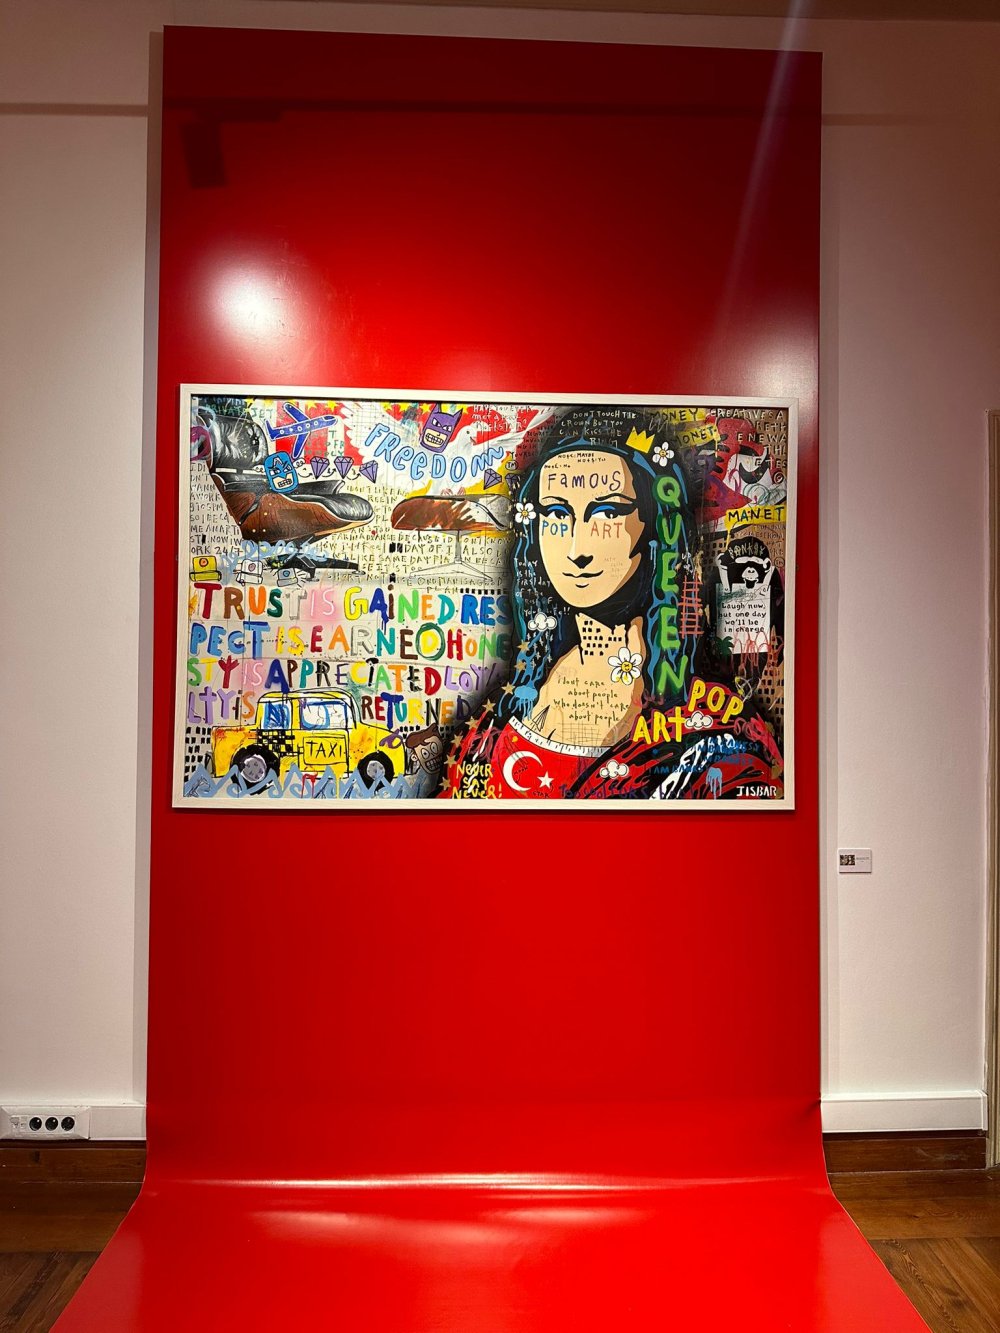 Jisbar, kişisel sergisiyle İstanbul'da: Gelir bağışlanacak